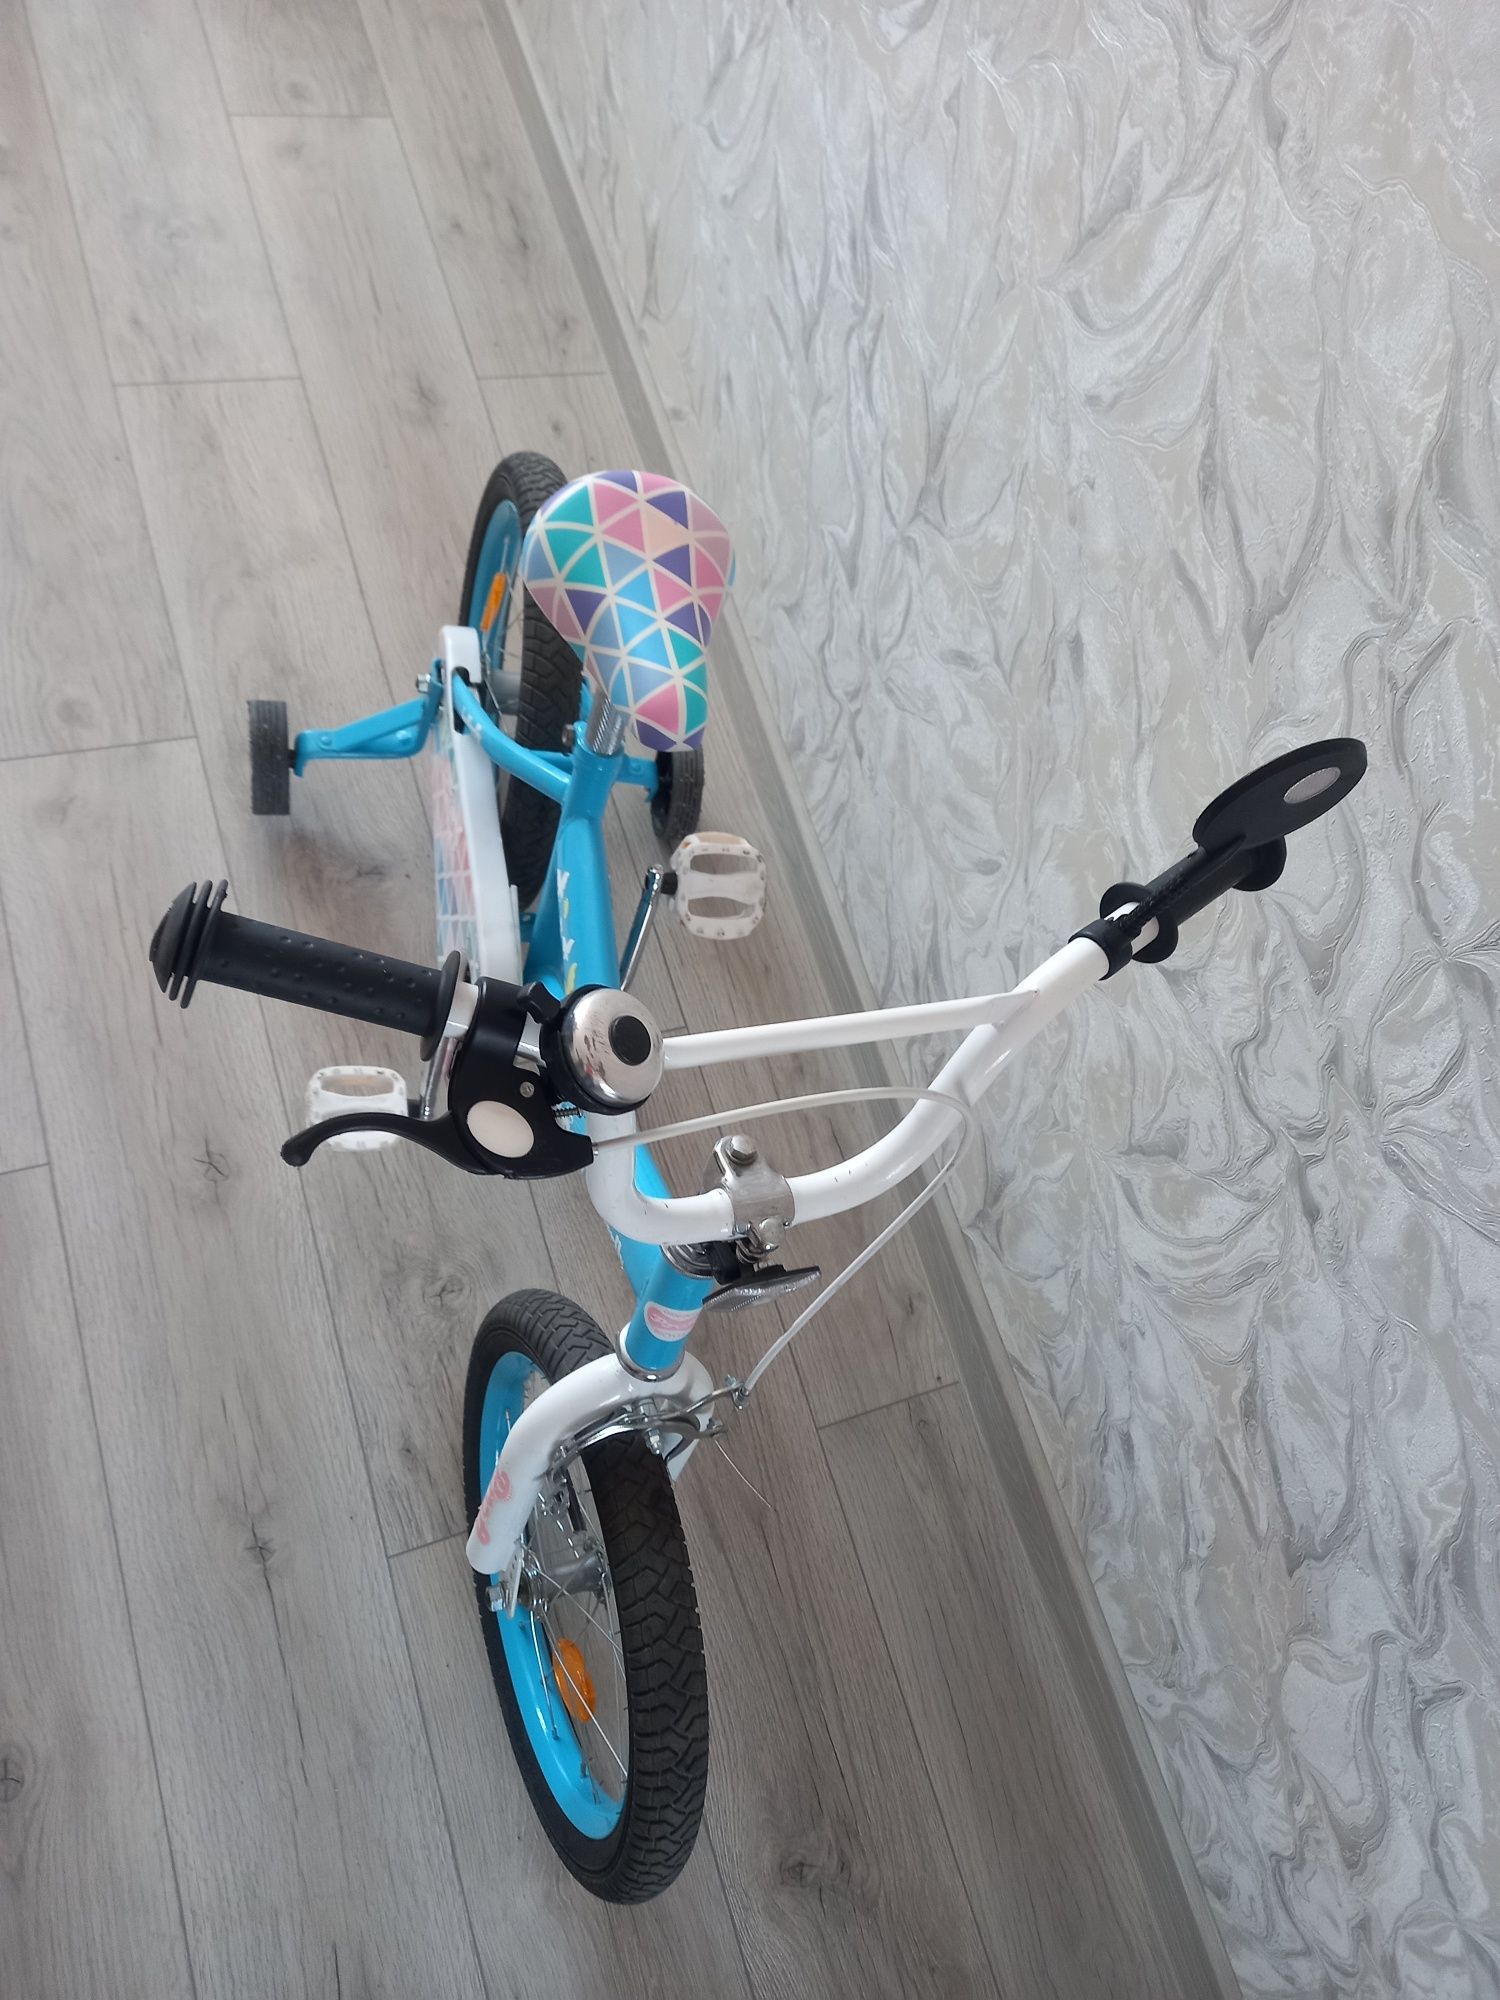 Детский велосипед 4-6 лет